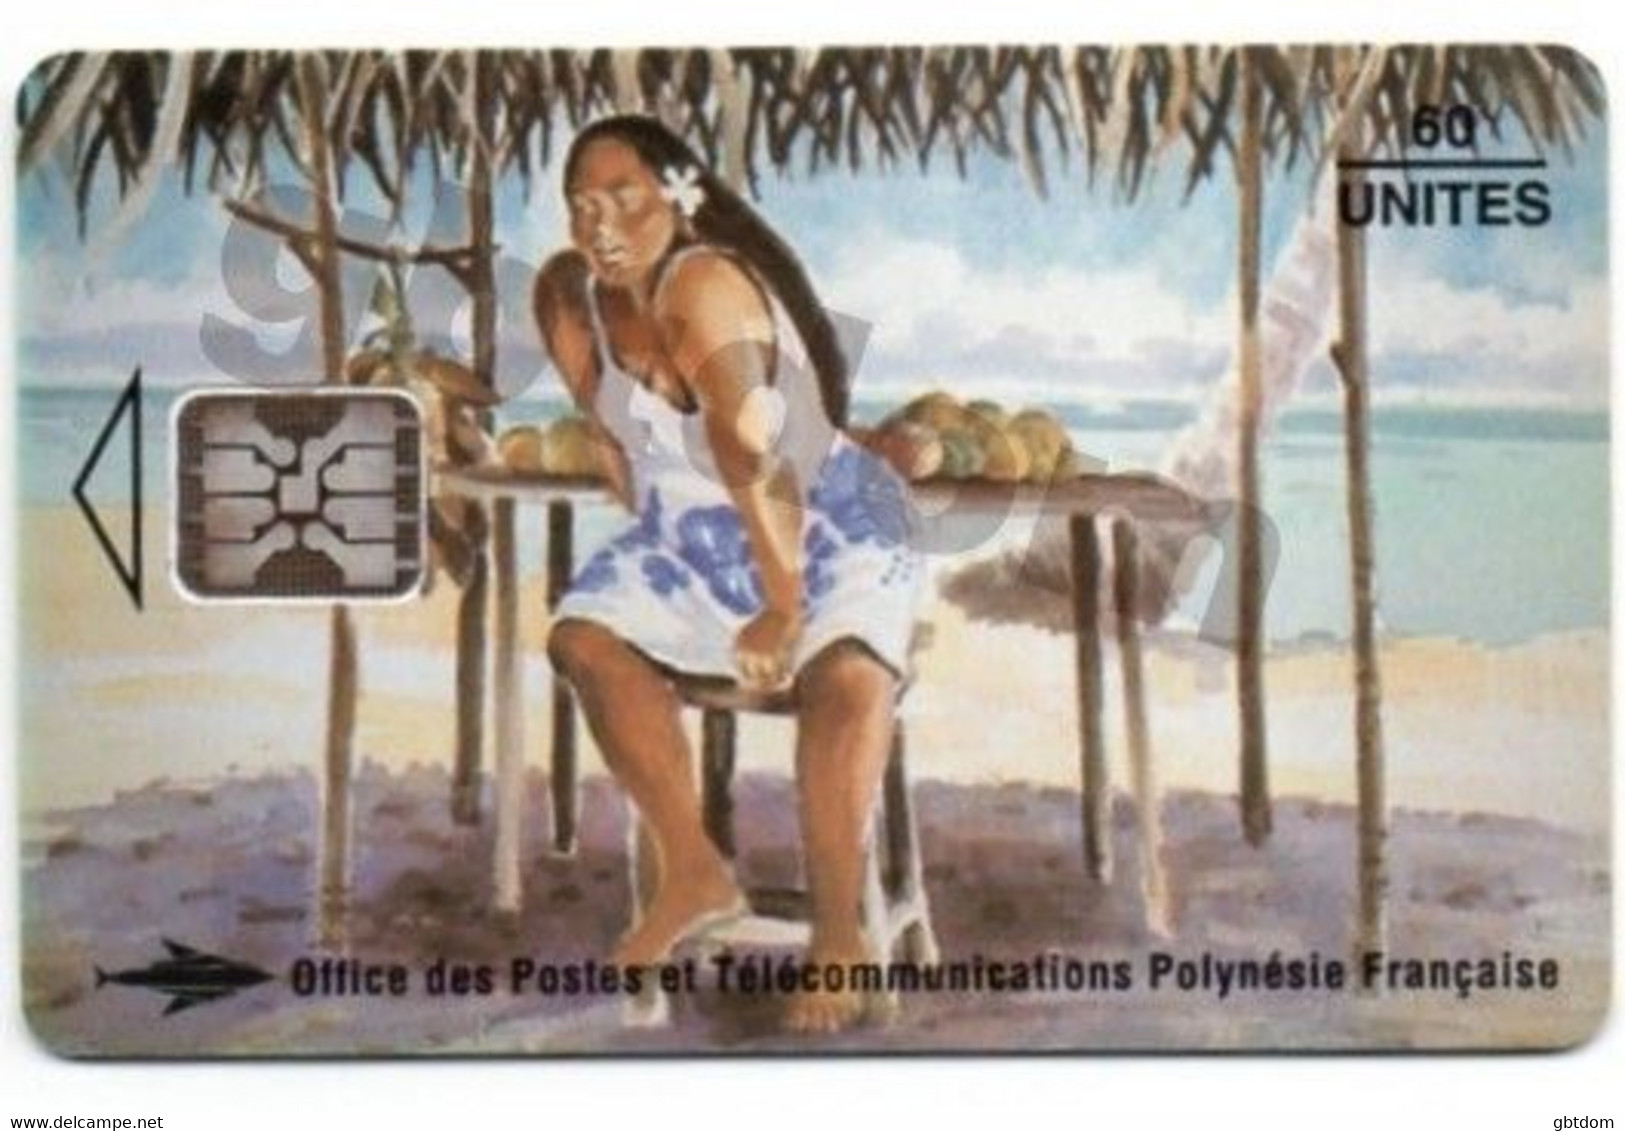 Magnifique Carte Téléphonique De TAHITI Polynésie Française - Vendeuse De Mangues - Erhard Lux - Altri – Oceania